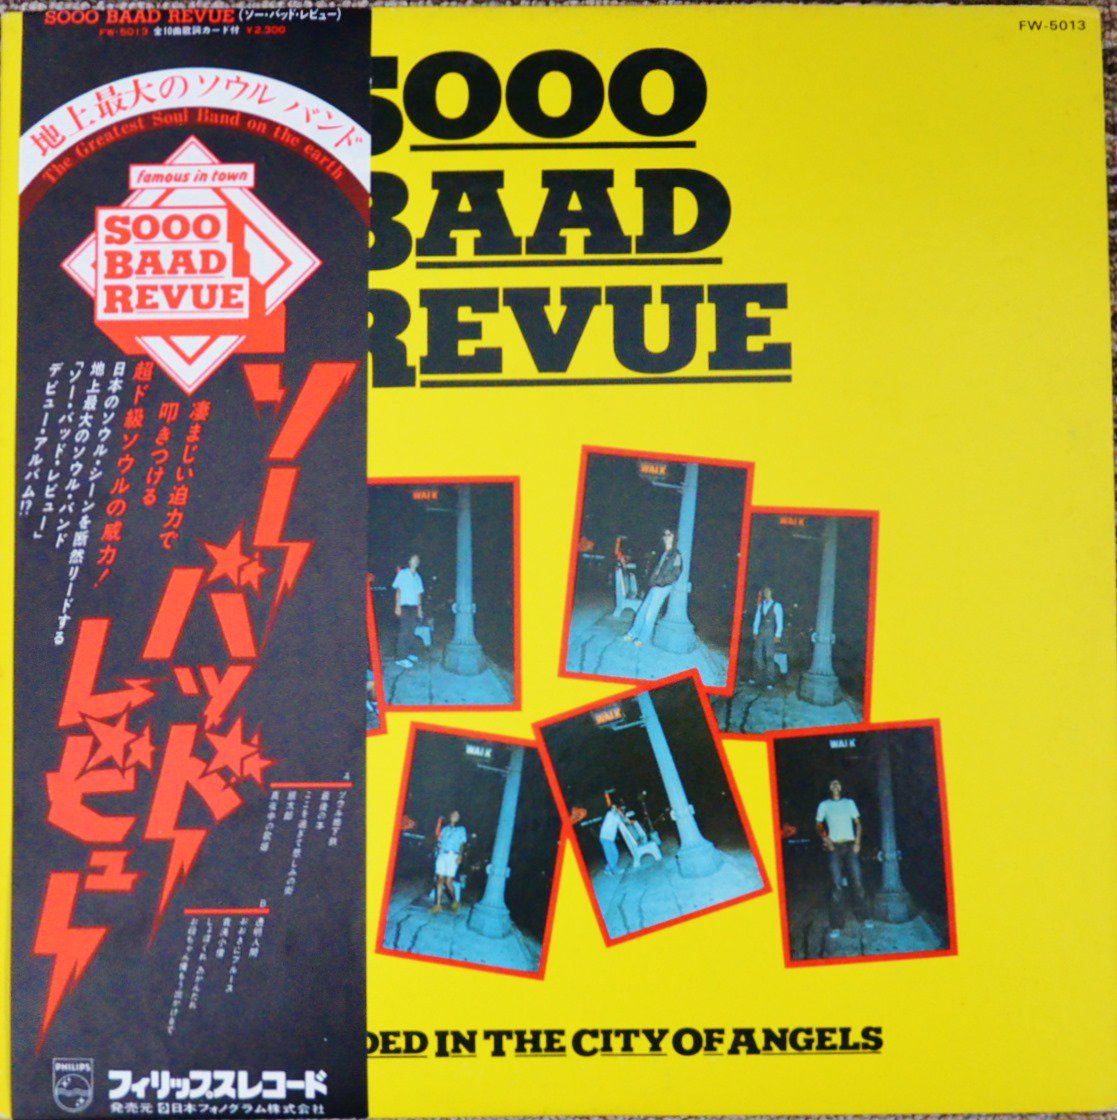 ソー・バッド・レビュー / SOOO BAAD REVUE (LP) - HIP TANK RECORDS